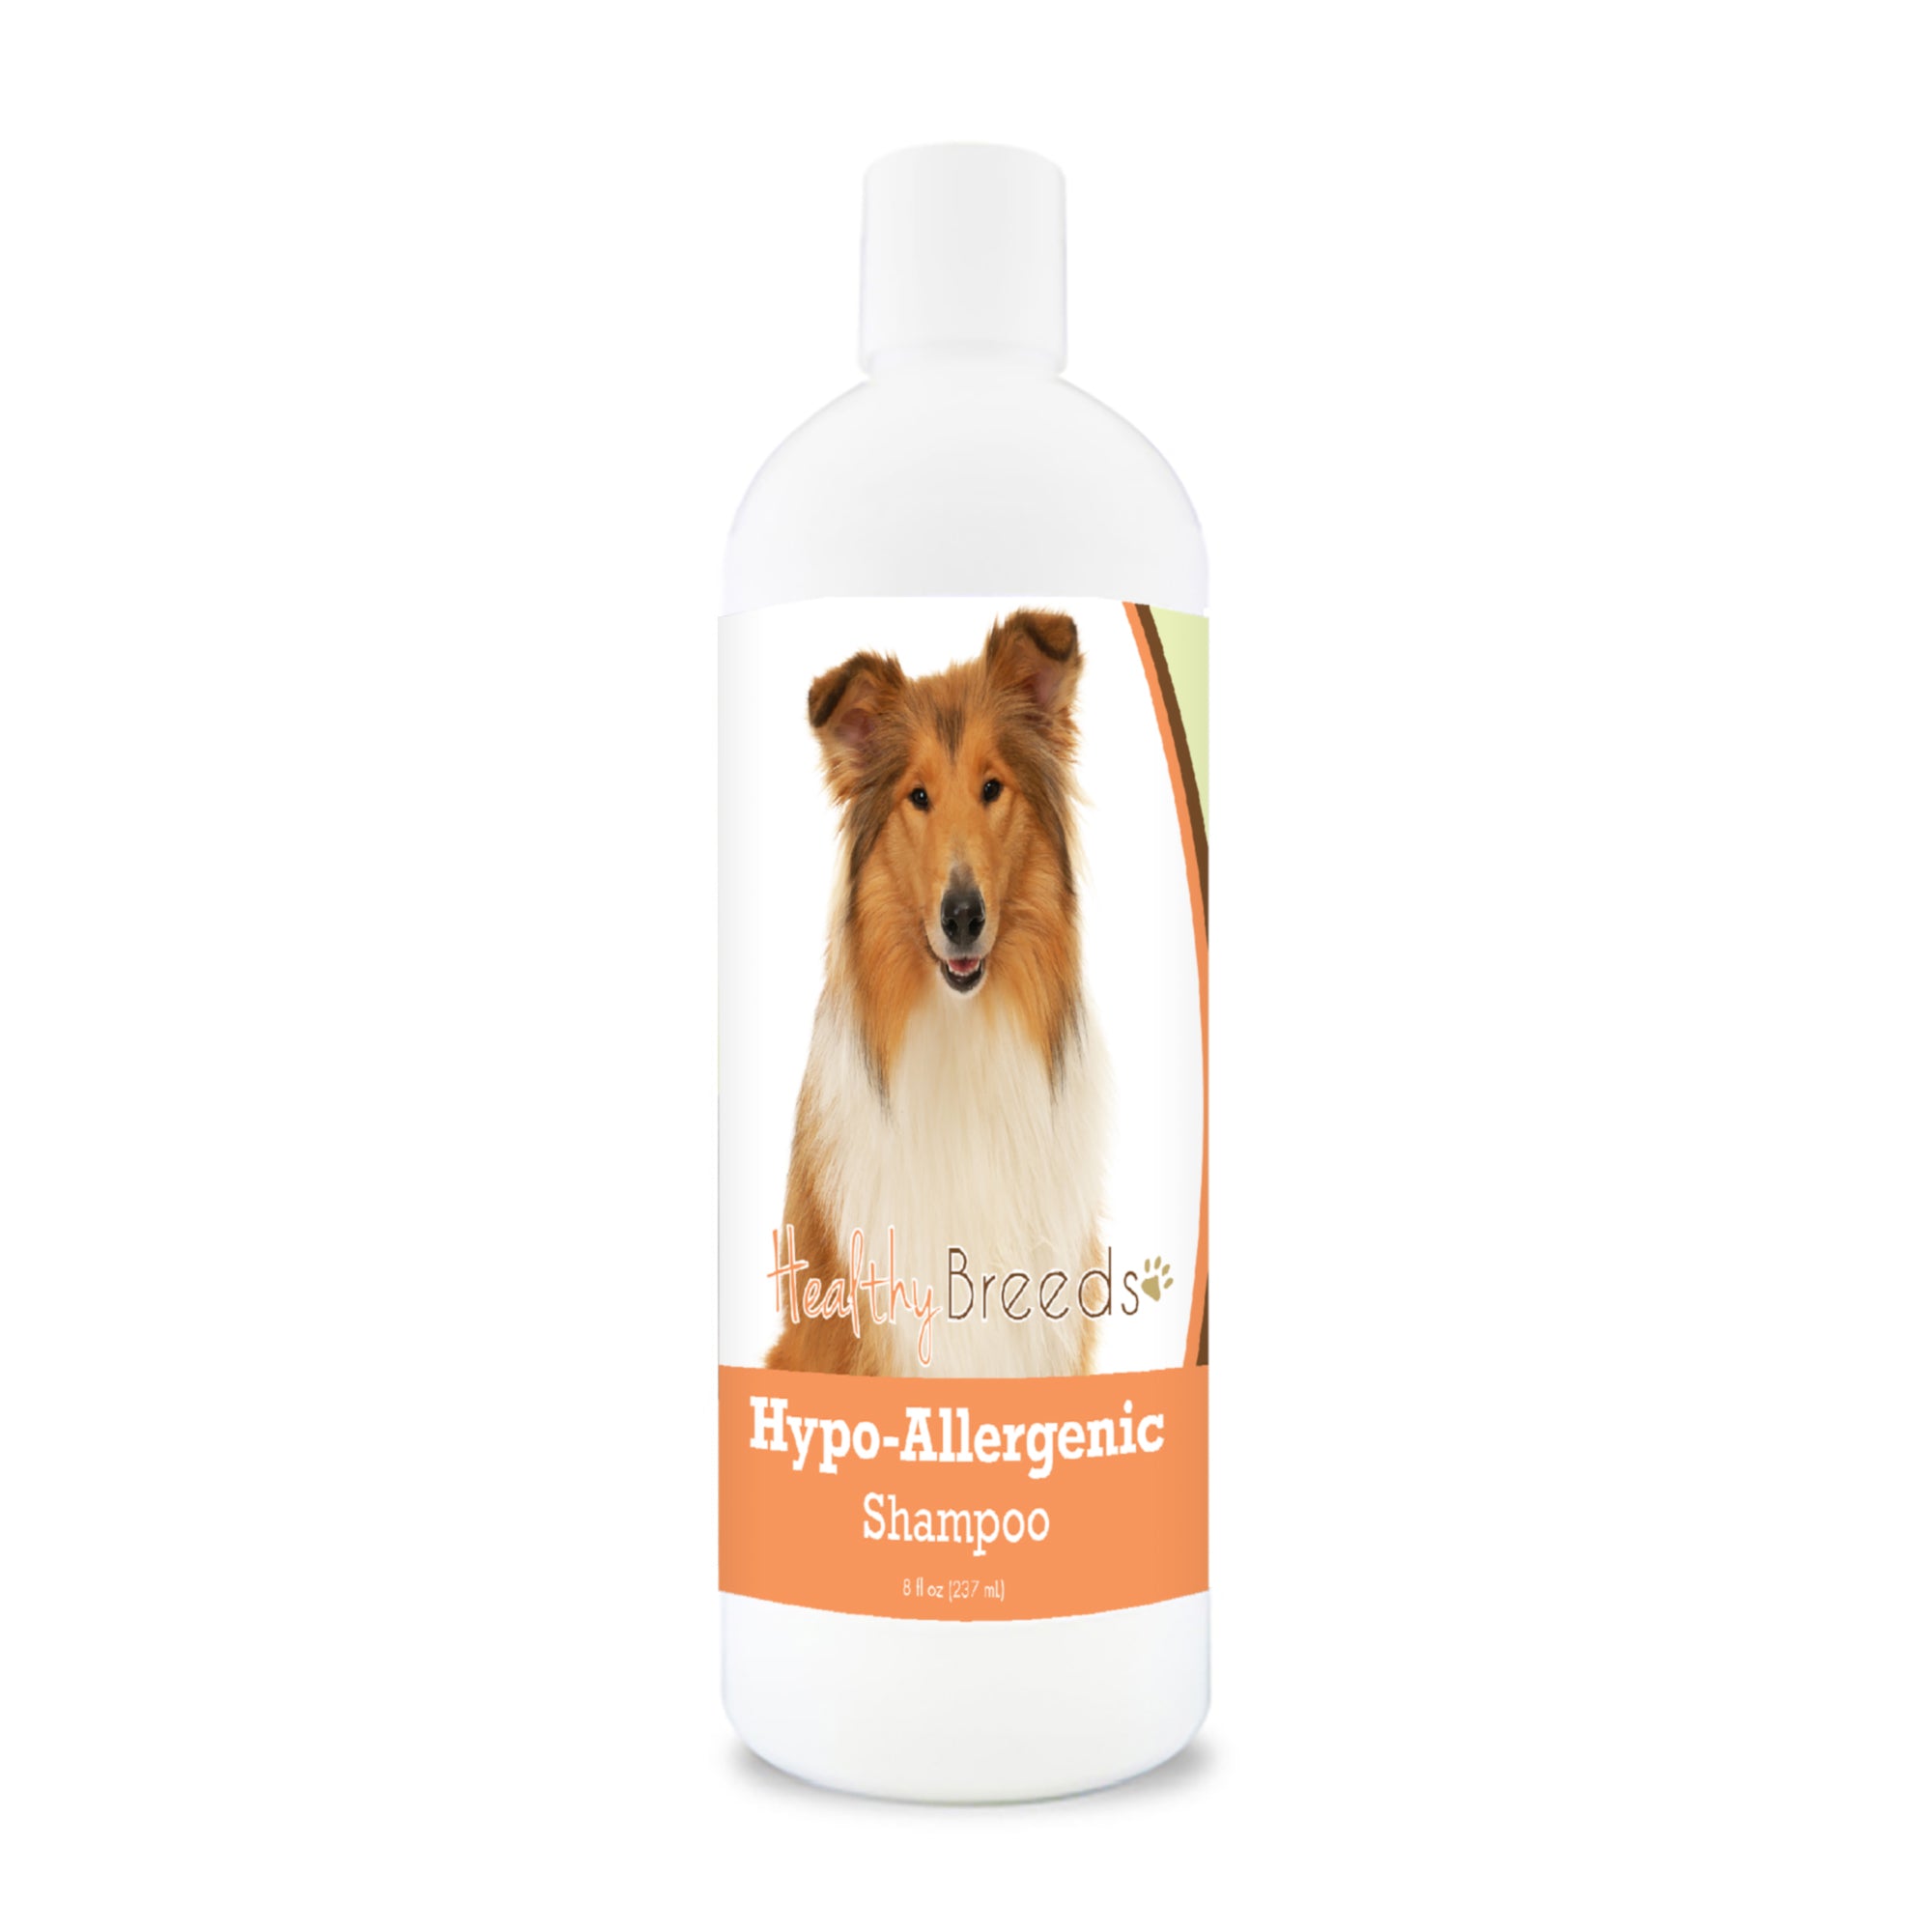 Collie Hypo-Allergenic Shampoo 8 oz